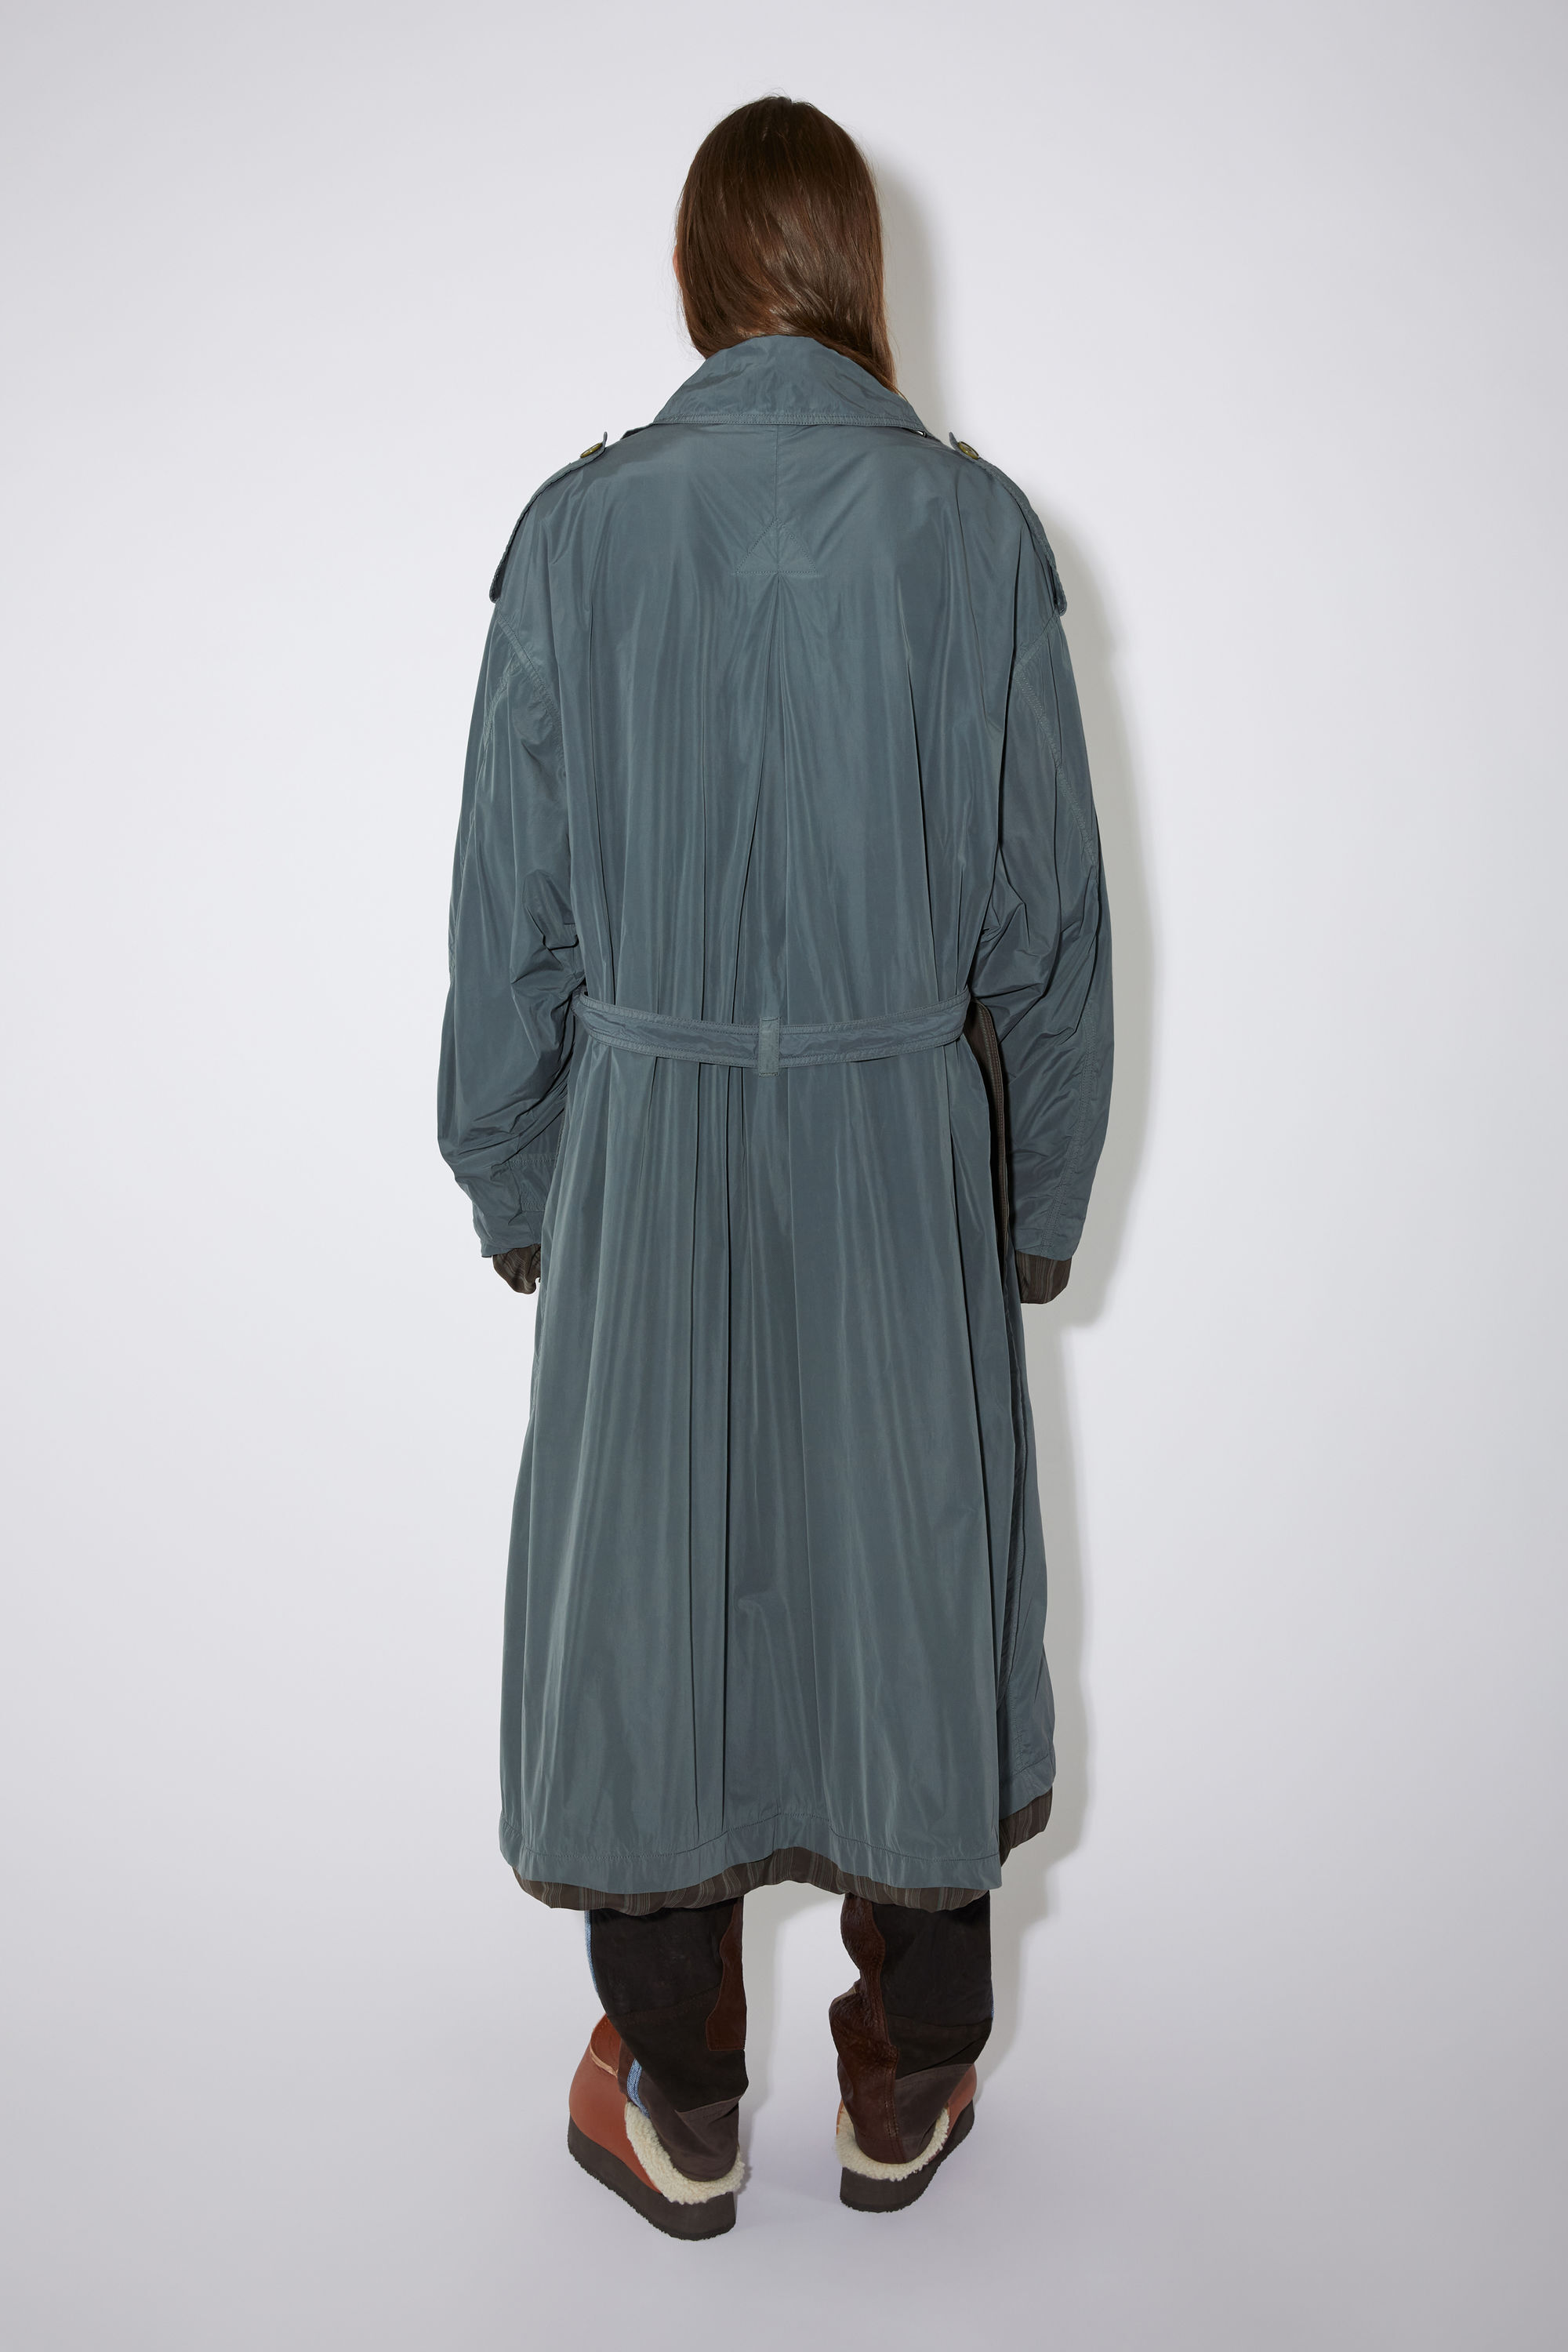 Femme Vêtements homme Manteaux homme Imperméables et trench coats Trench Synthétique Acne Studios en coloris Gris 